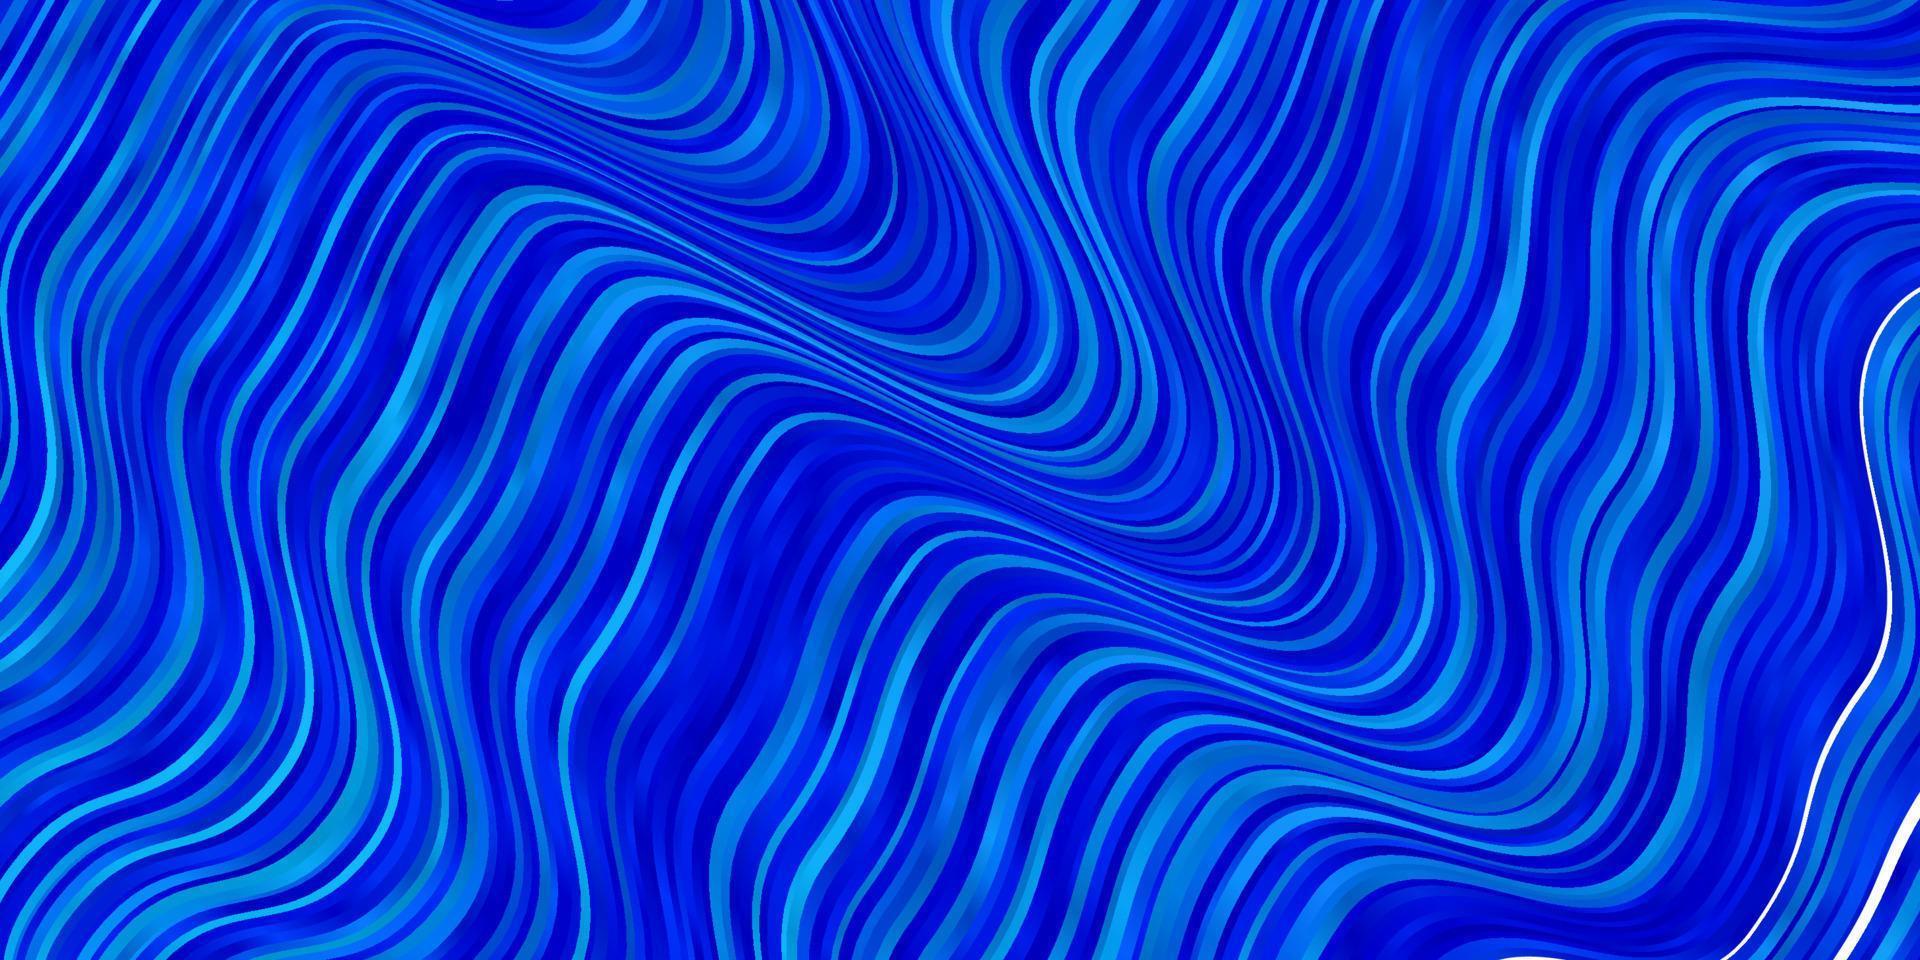 texture vettoriale blu chiaro con linee ironiche.